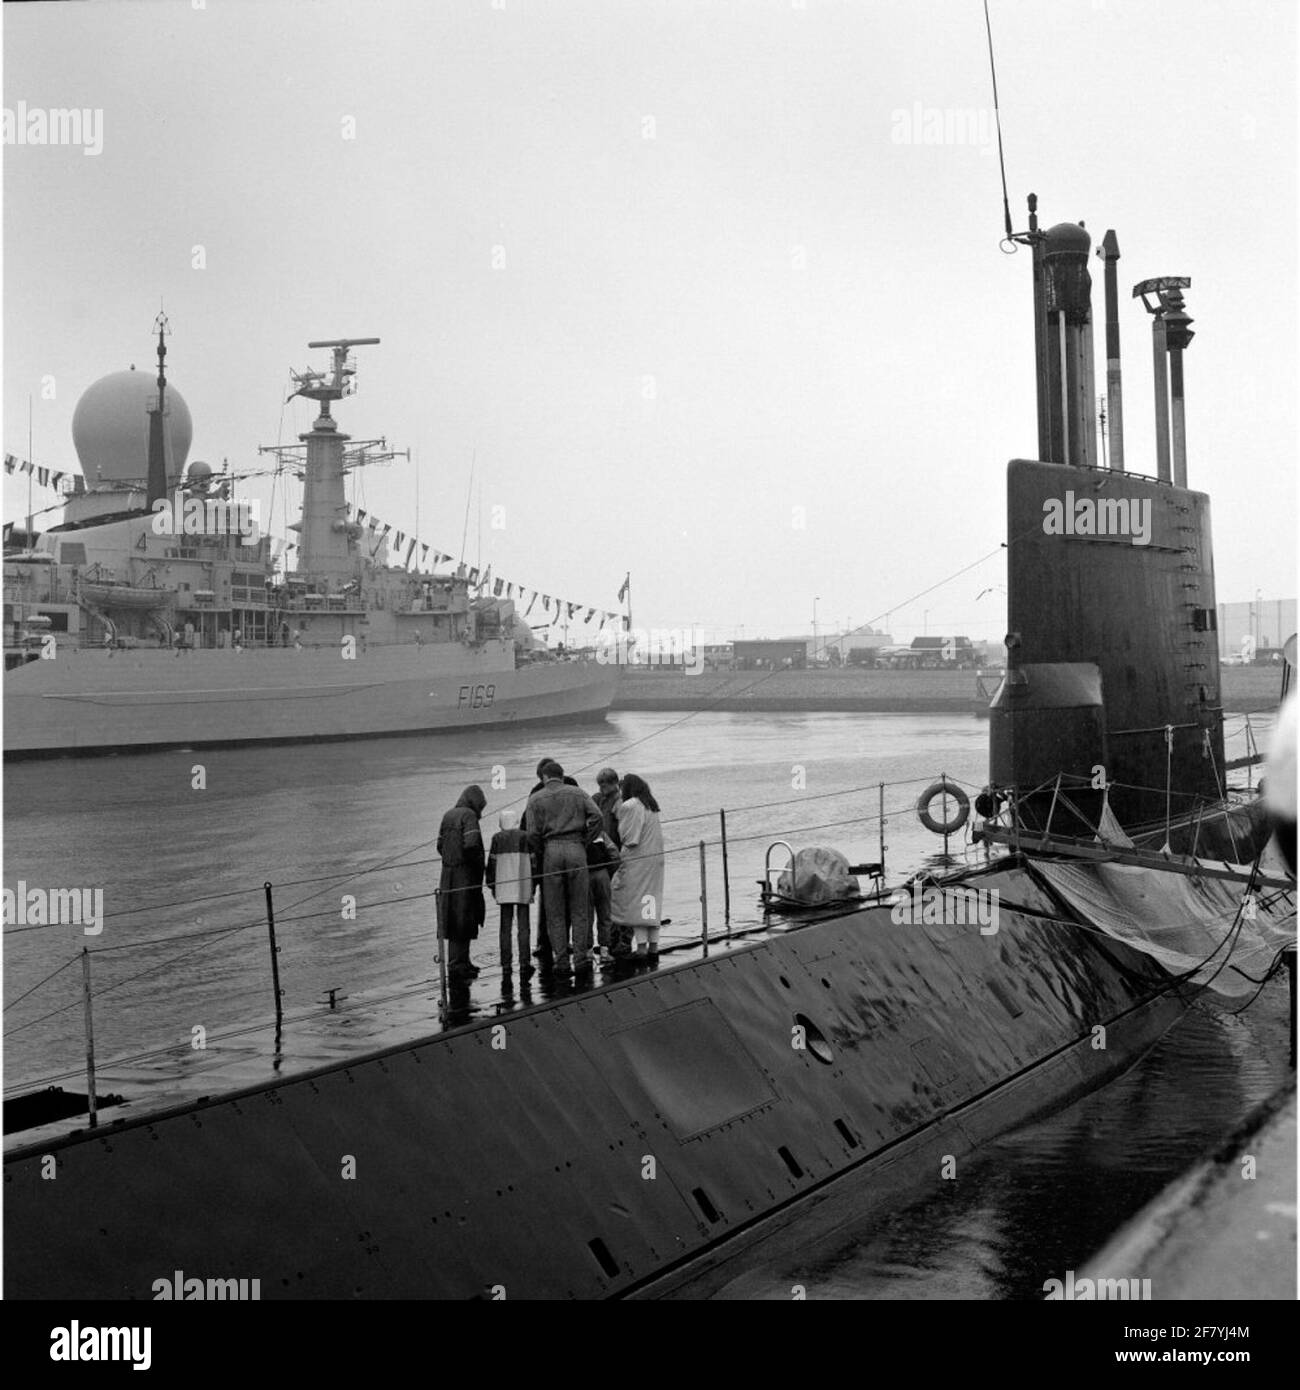 Flottentage 1989 in Den Helder mit dem U-Boot HR.MS im Vordergrund.  Thunfisch (S 805, Dreizylinder) und im Hintergrund die britische Fregatte  HMS Amazon vom Typ 21 (F 169, 1974 Stockfotografie - Alamy